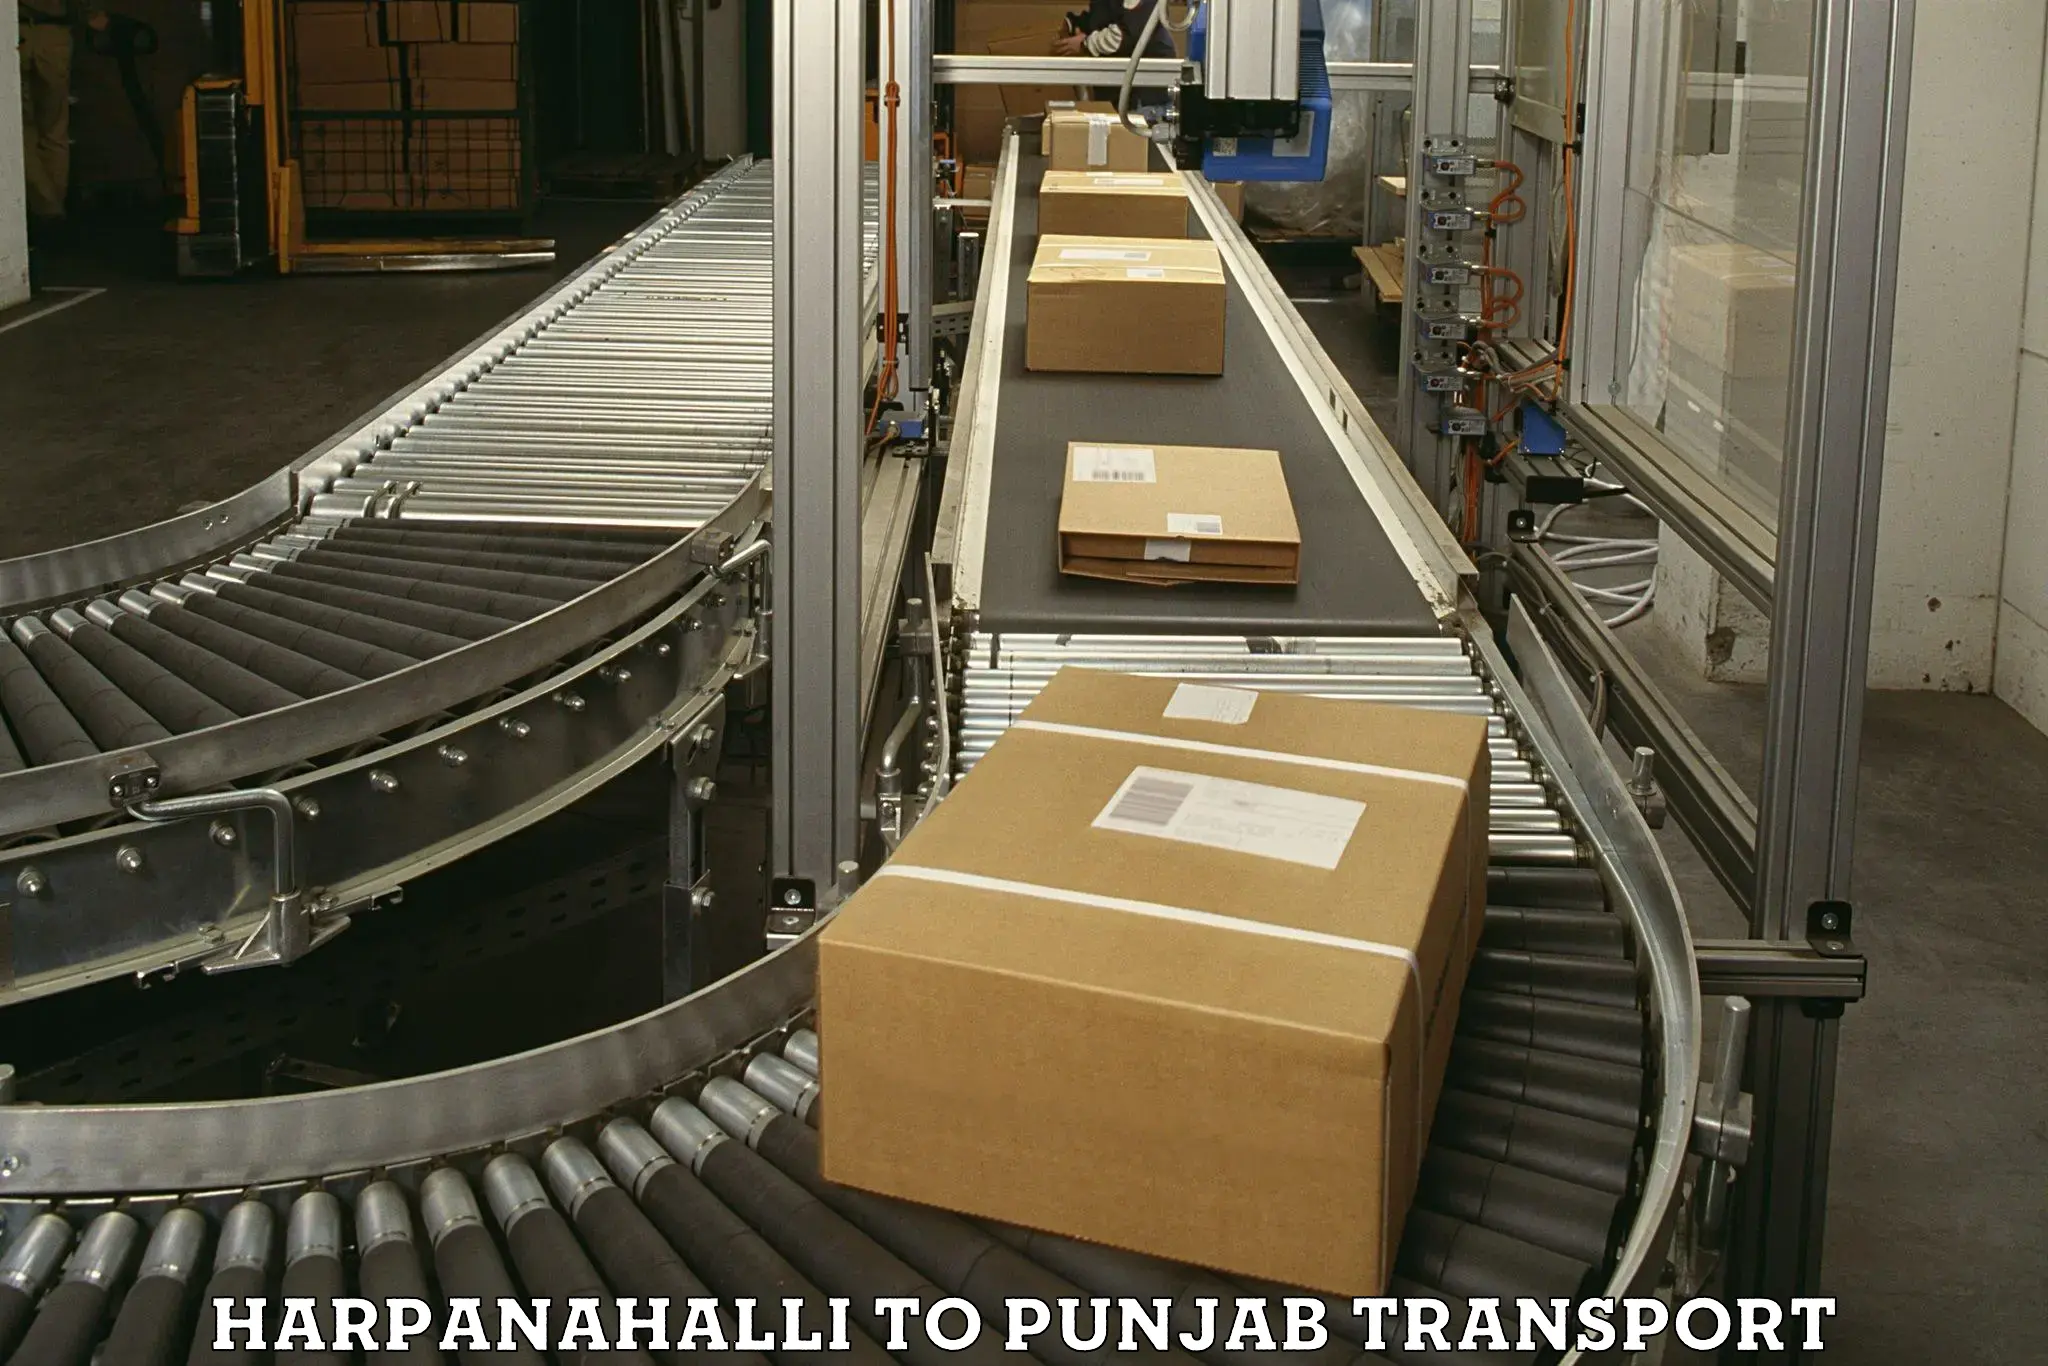 Transport in sharing Harpanahalli to Punjab